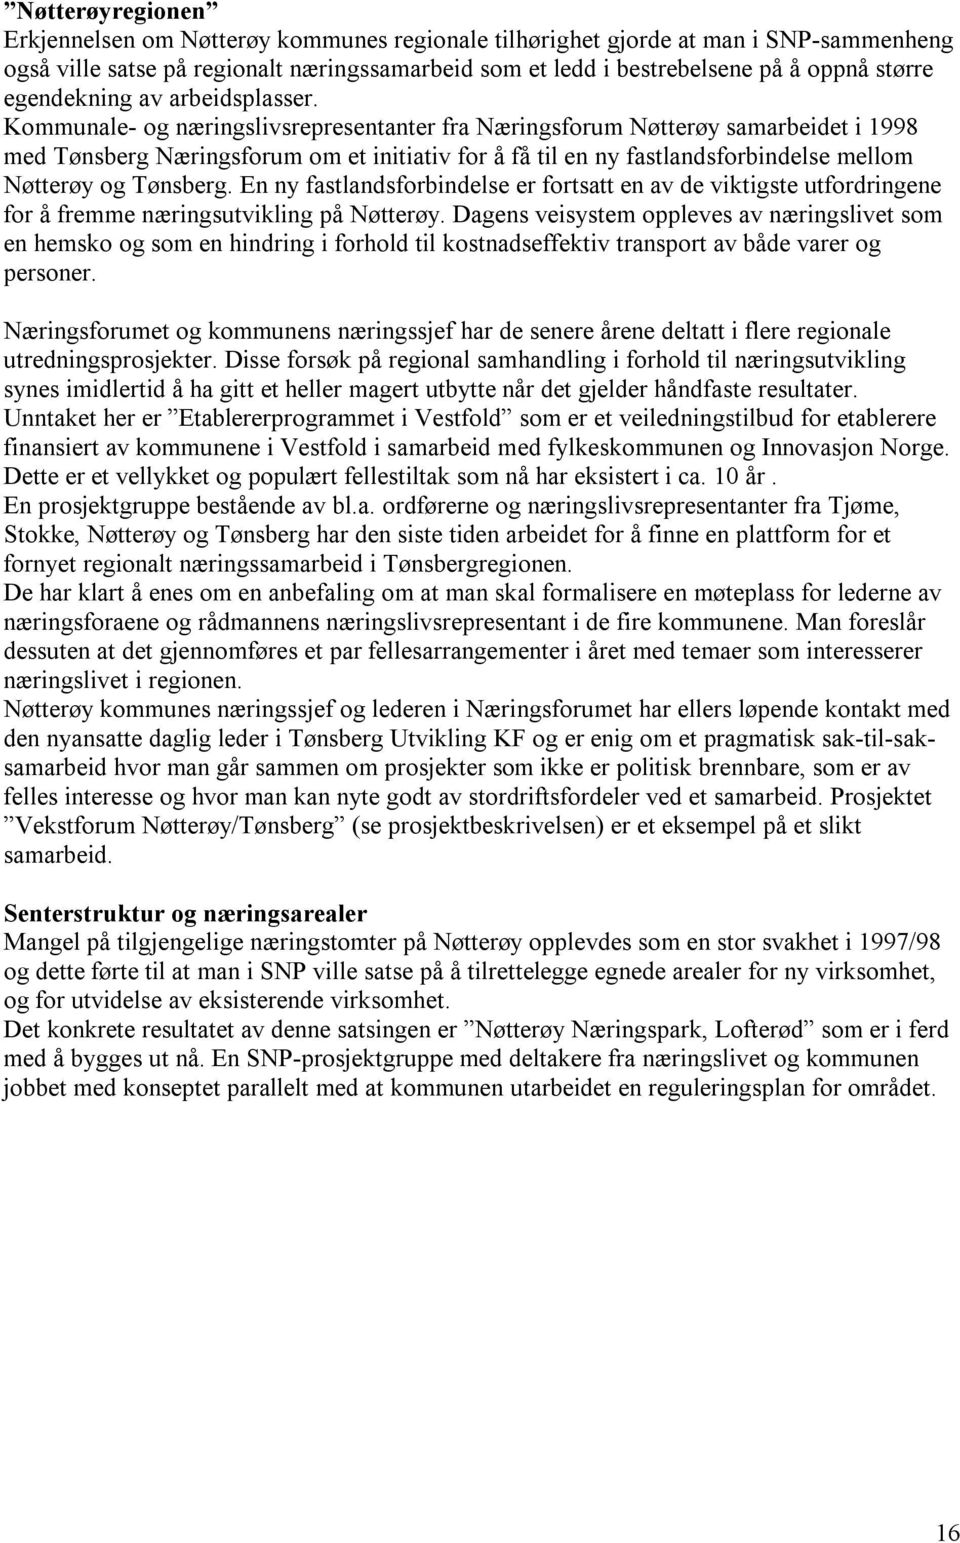 Kommunale- og næringslivsrepresentanter fra Næringsforum Nøtterøy samarbeidet i 1998 med Tønsberg Næringsforum om et initiativ for å få til en ny fastlandsforbindelse mellom Nøtterøy og Tønsberg.